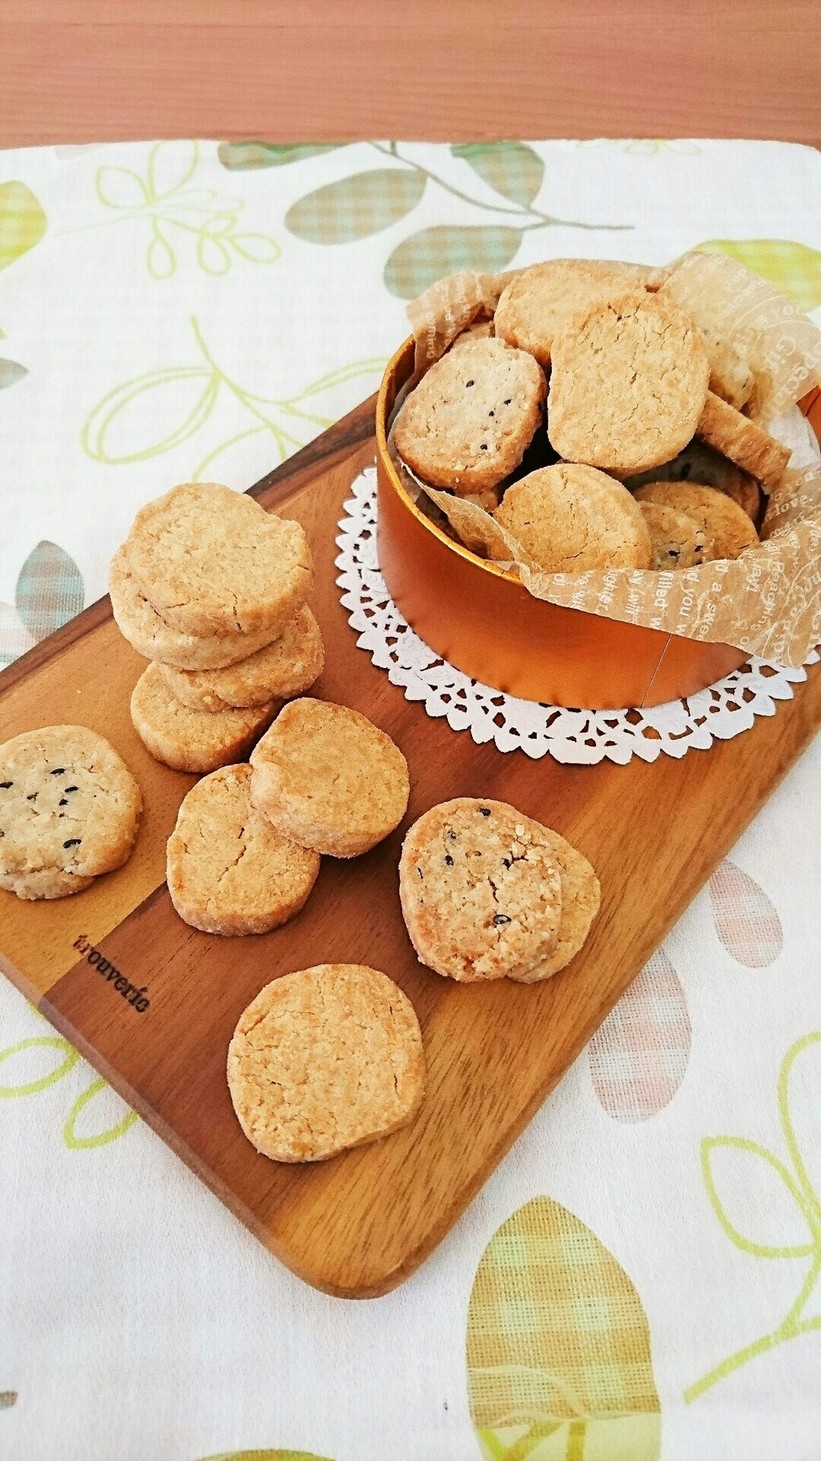 ザクホロ☆米粉のアイスボックスクッキー。の画像